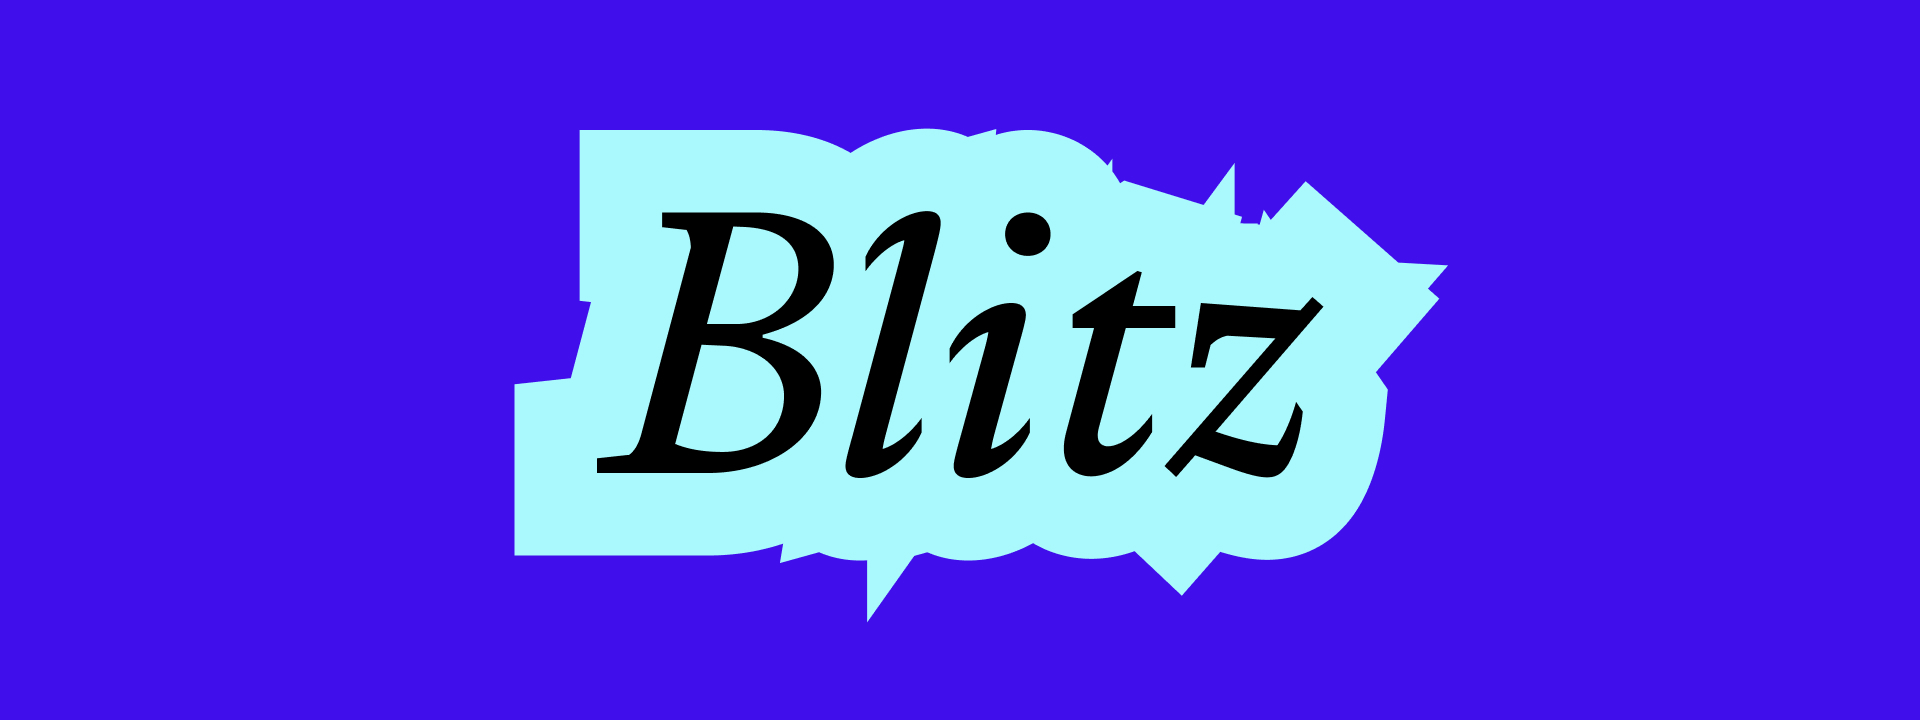 Blitz Headline image